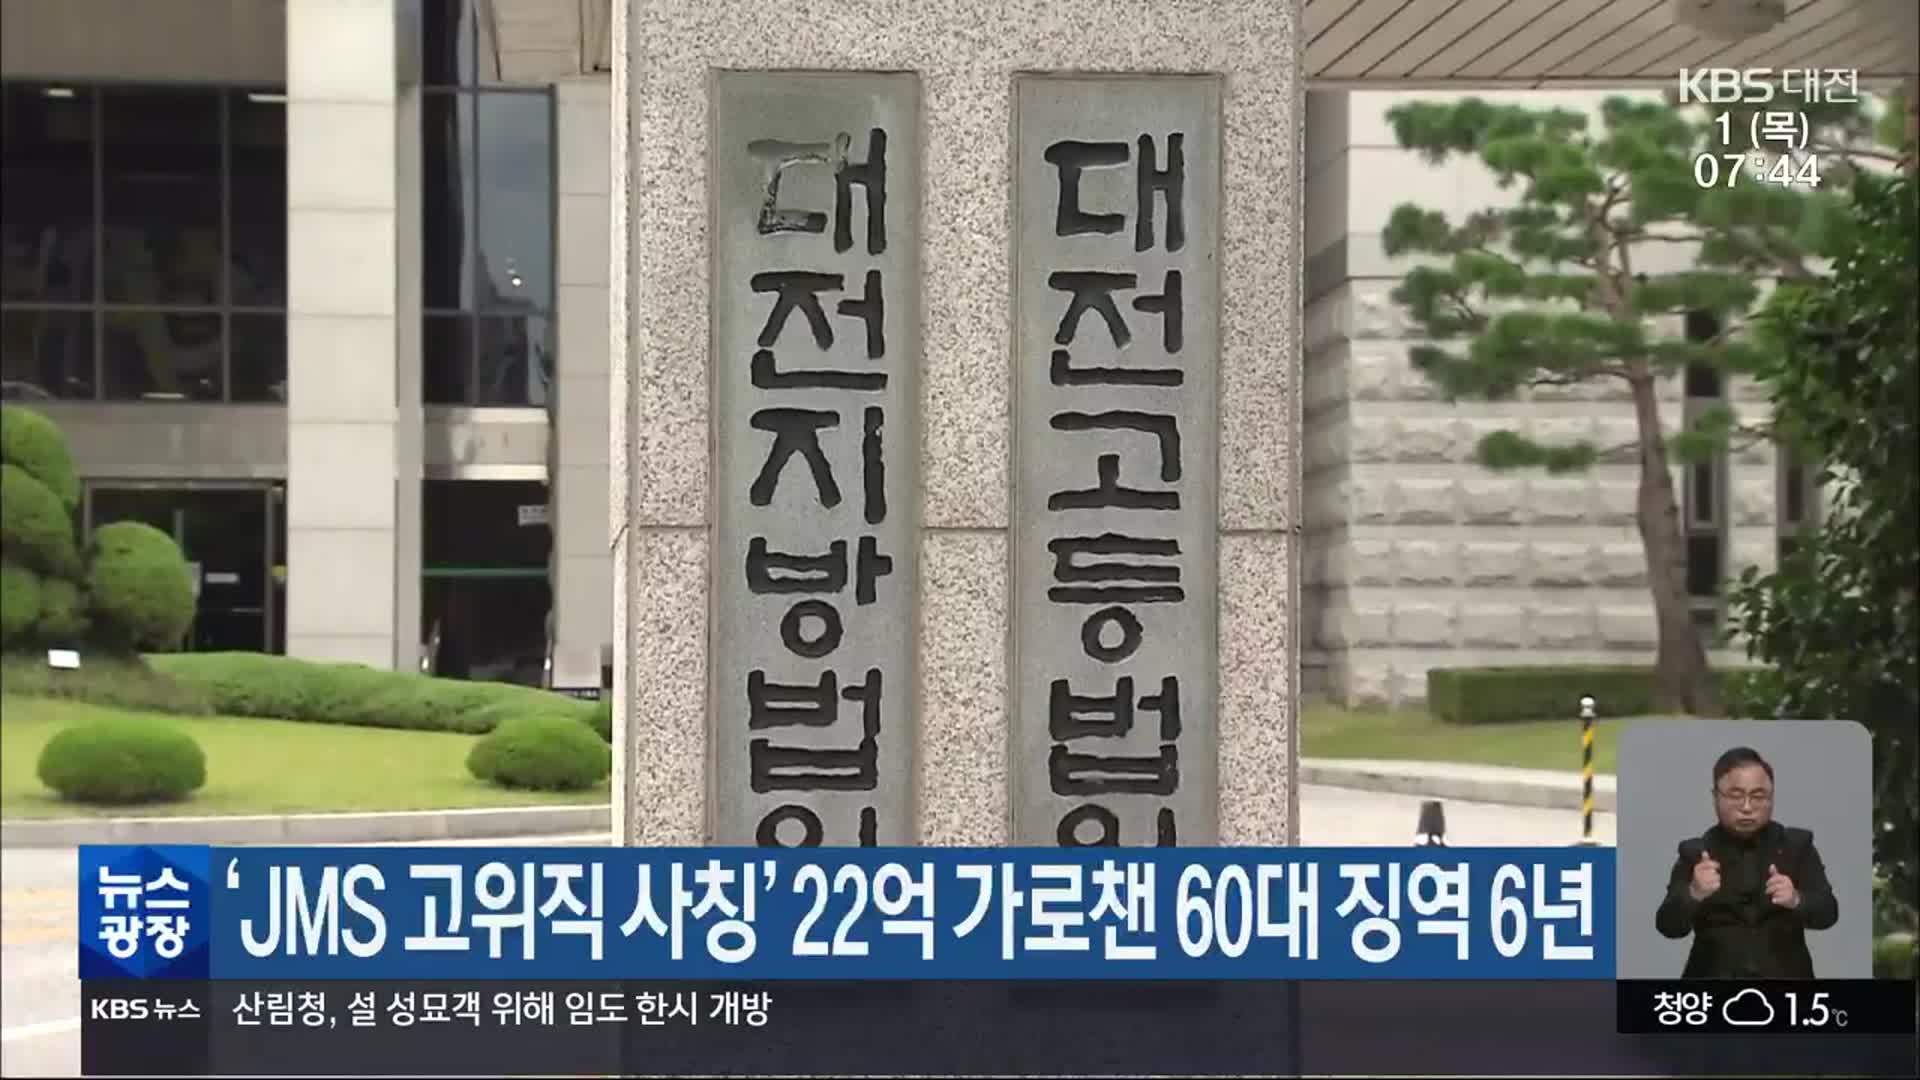 ‘JMS 고위직 사칭’ 22억 가로챈 60대 징역 6년